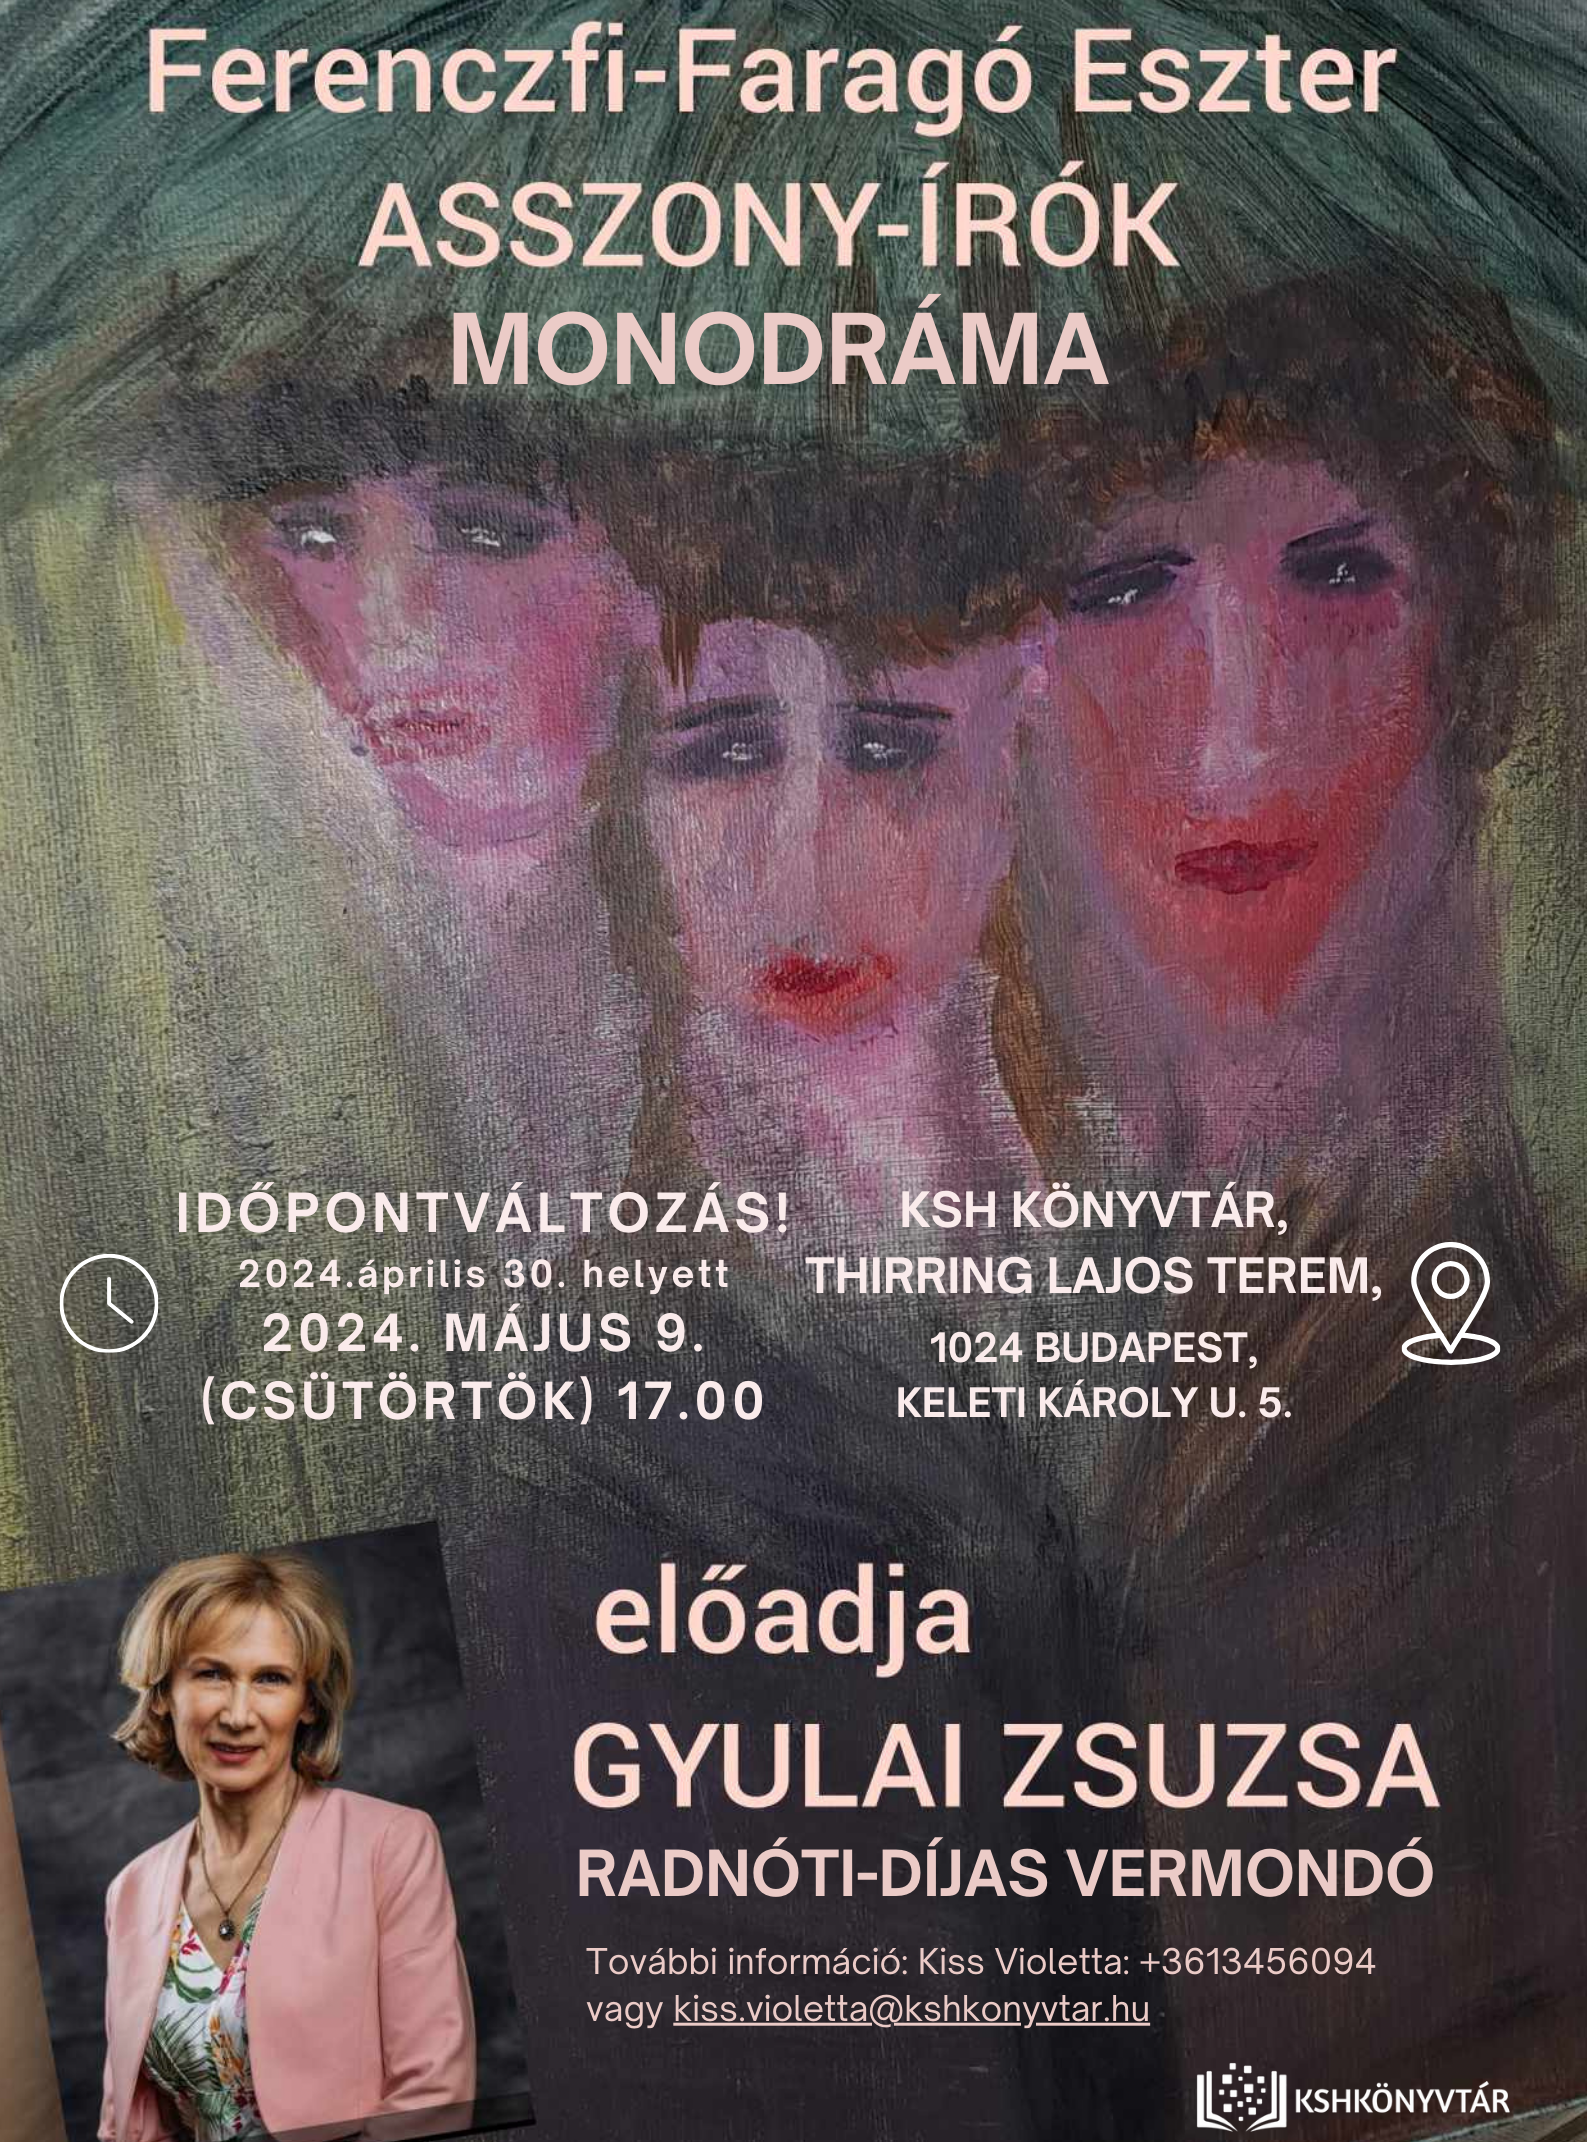 IDŐPONTVÁLTOZÁS! – Ferenczi-Faragó Eszter Asszony-írók című monodrámájának bemutatója – Gyulai Zsuzsa előadásában